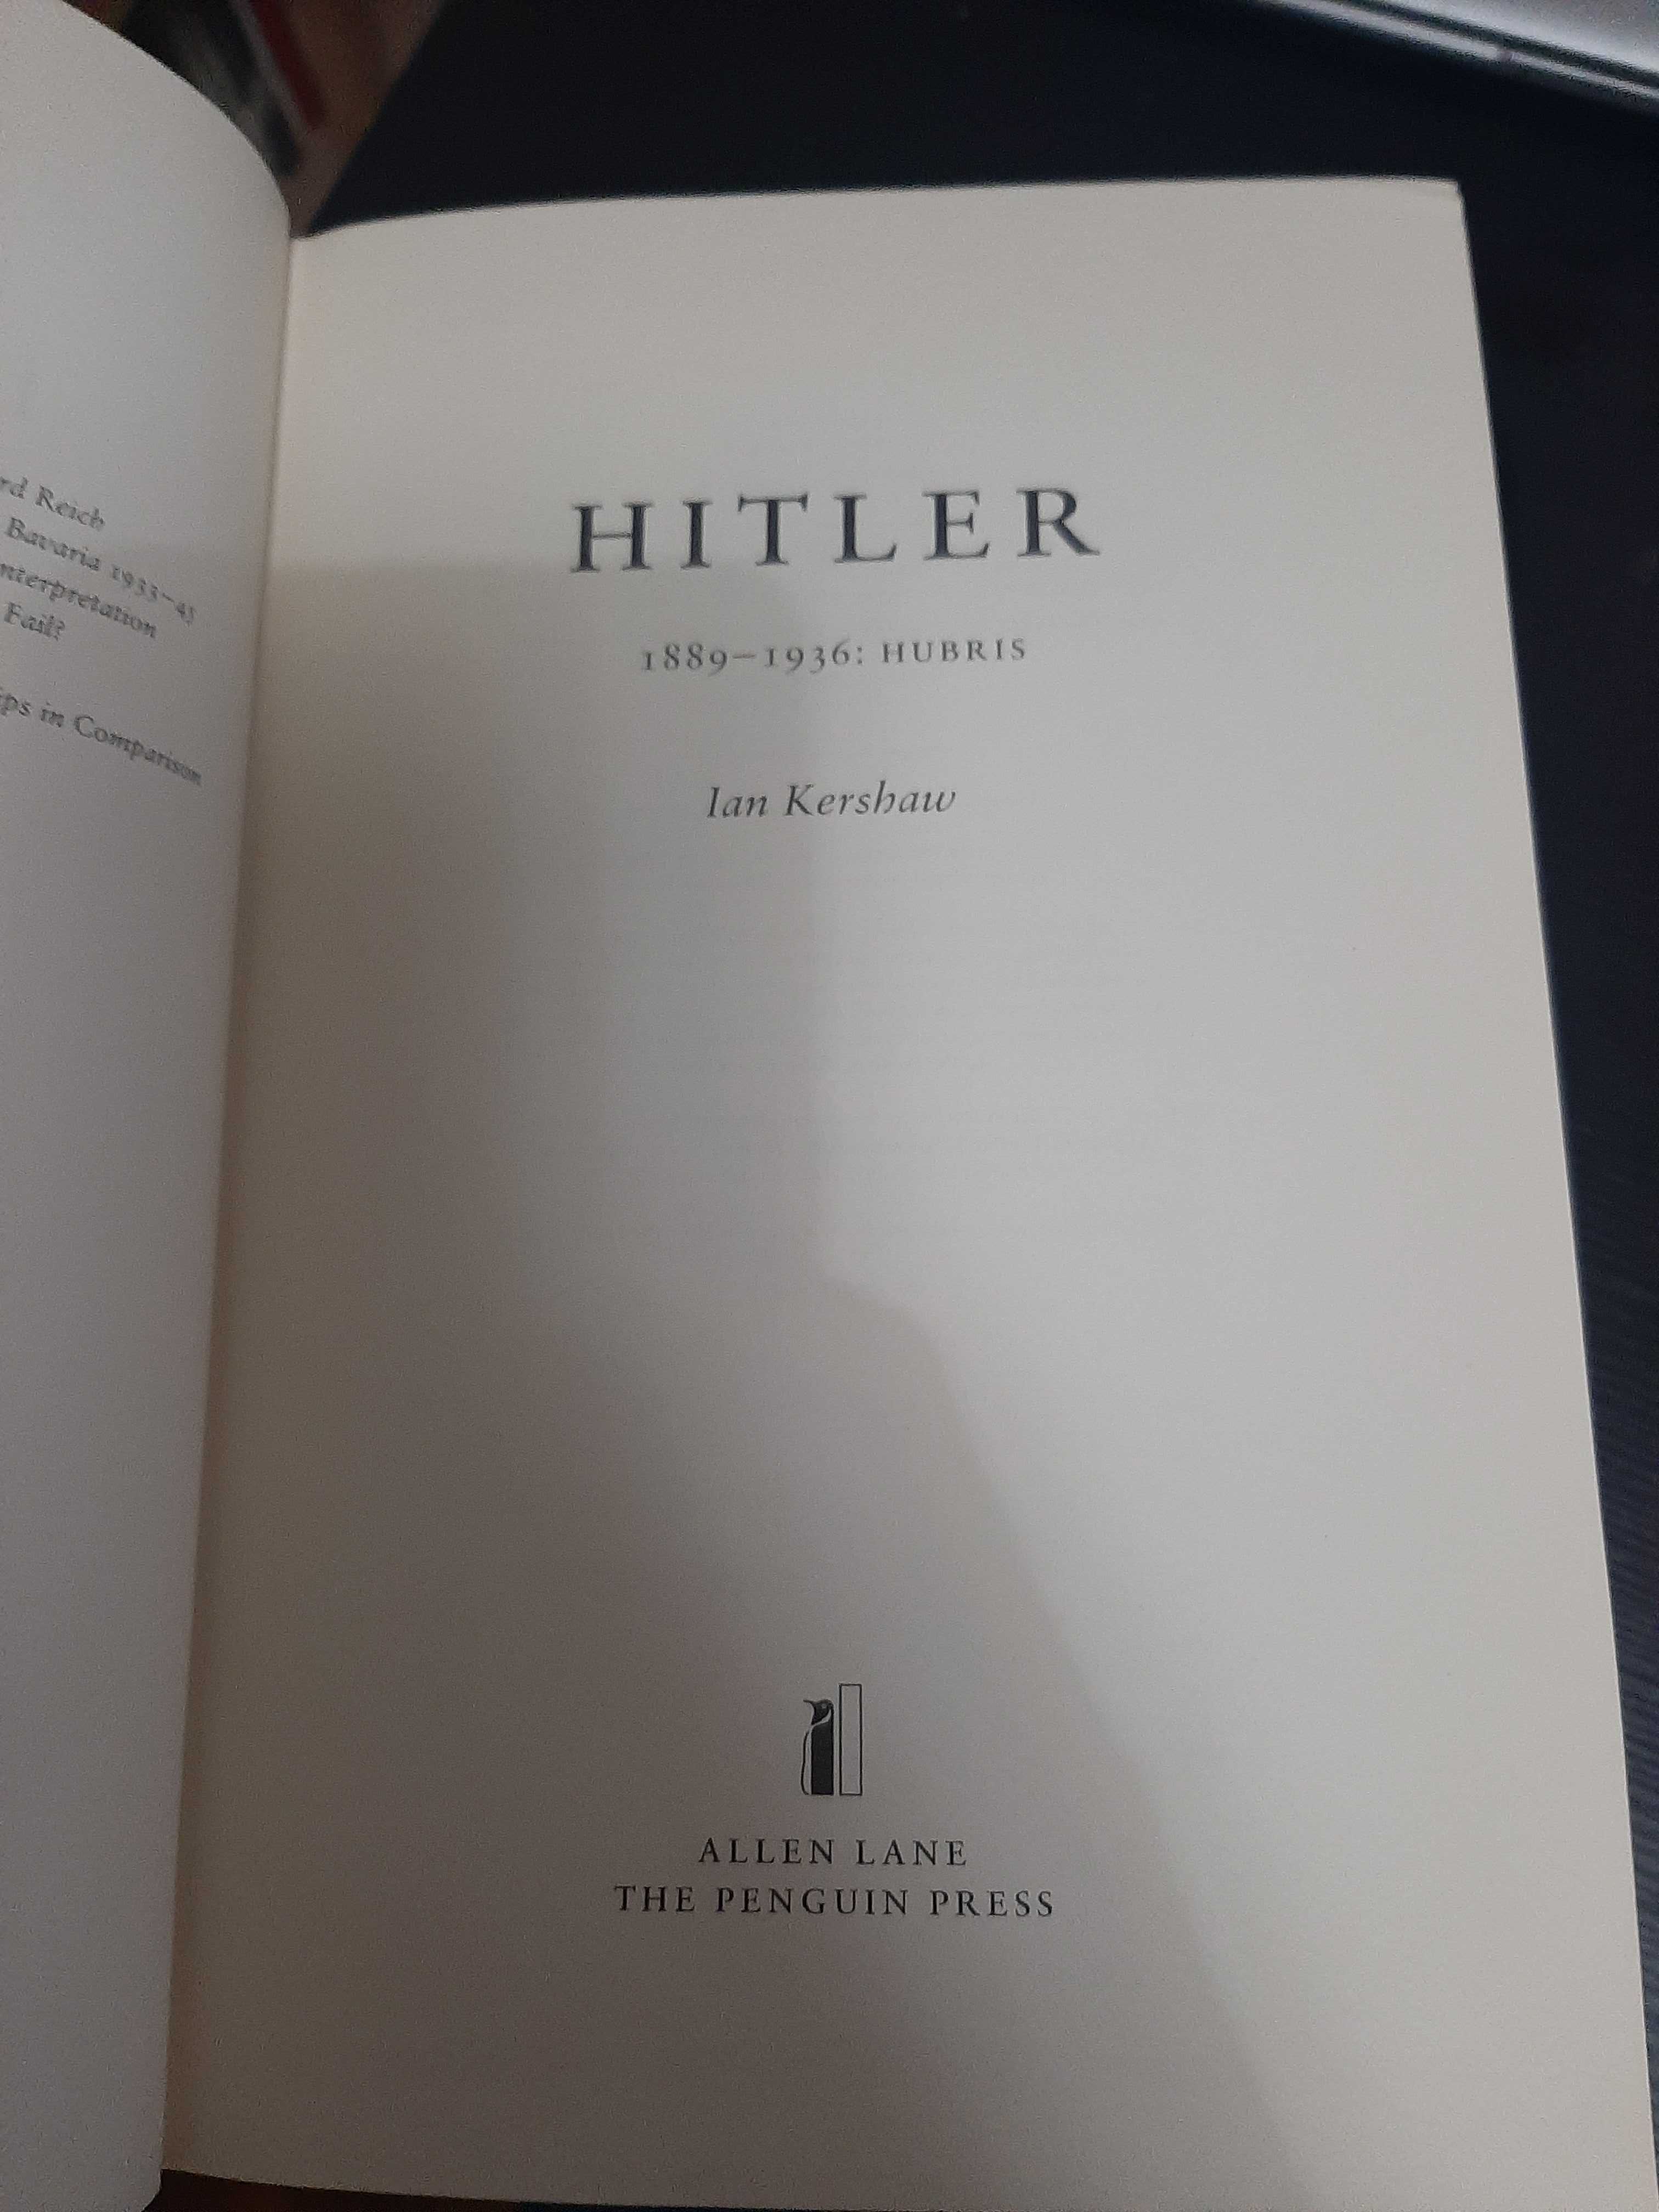 Ian Kershaw – Hitler: 1889 to 1936 - Hubris